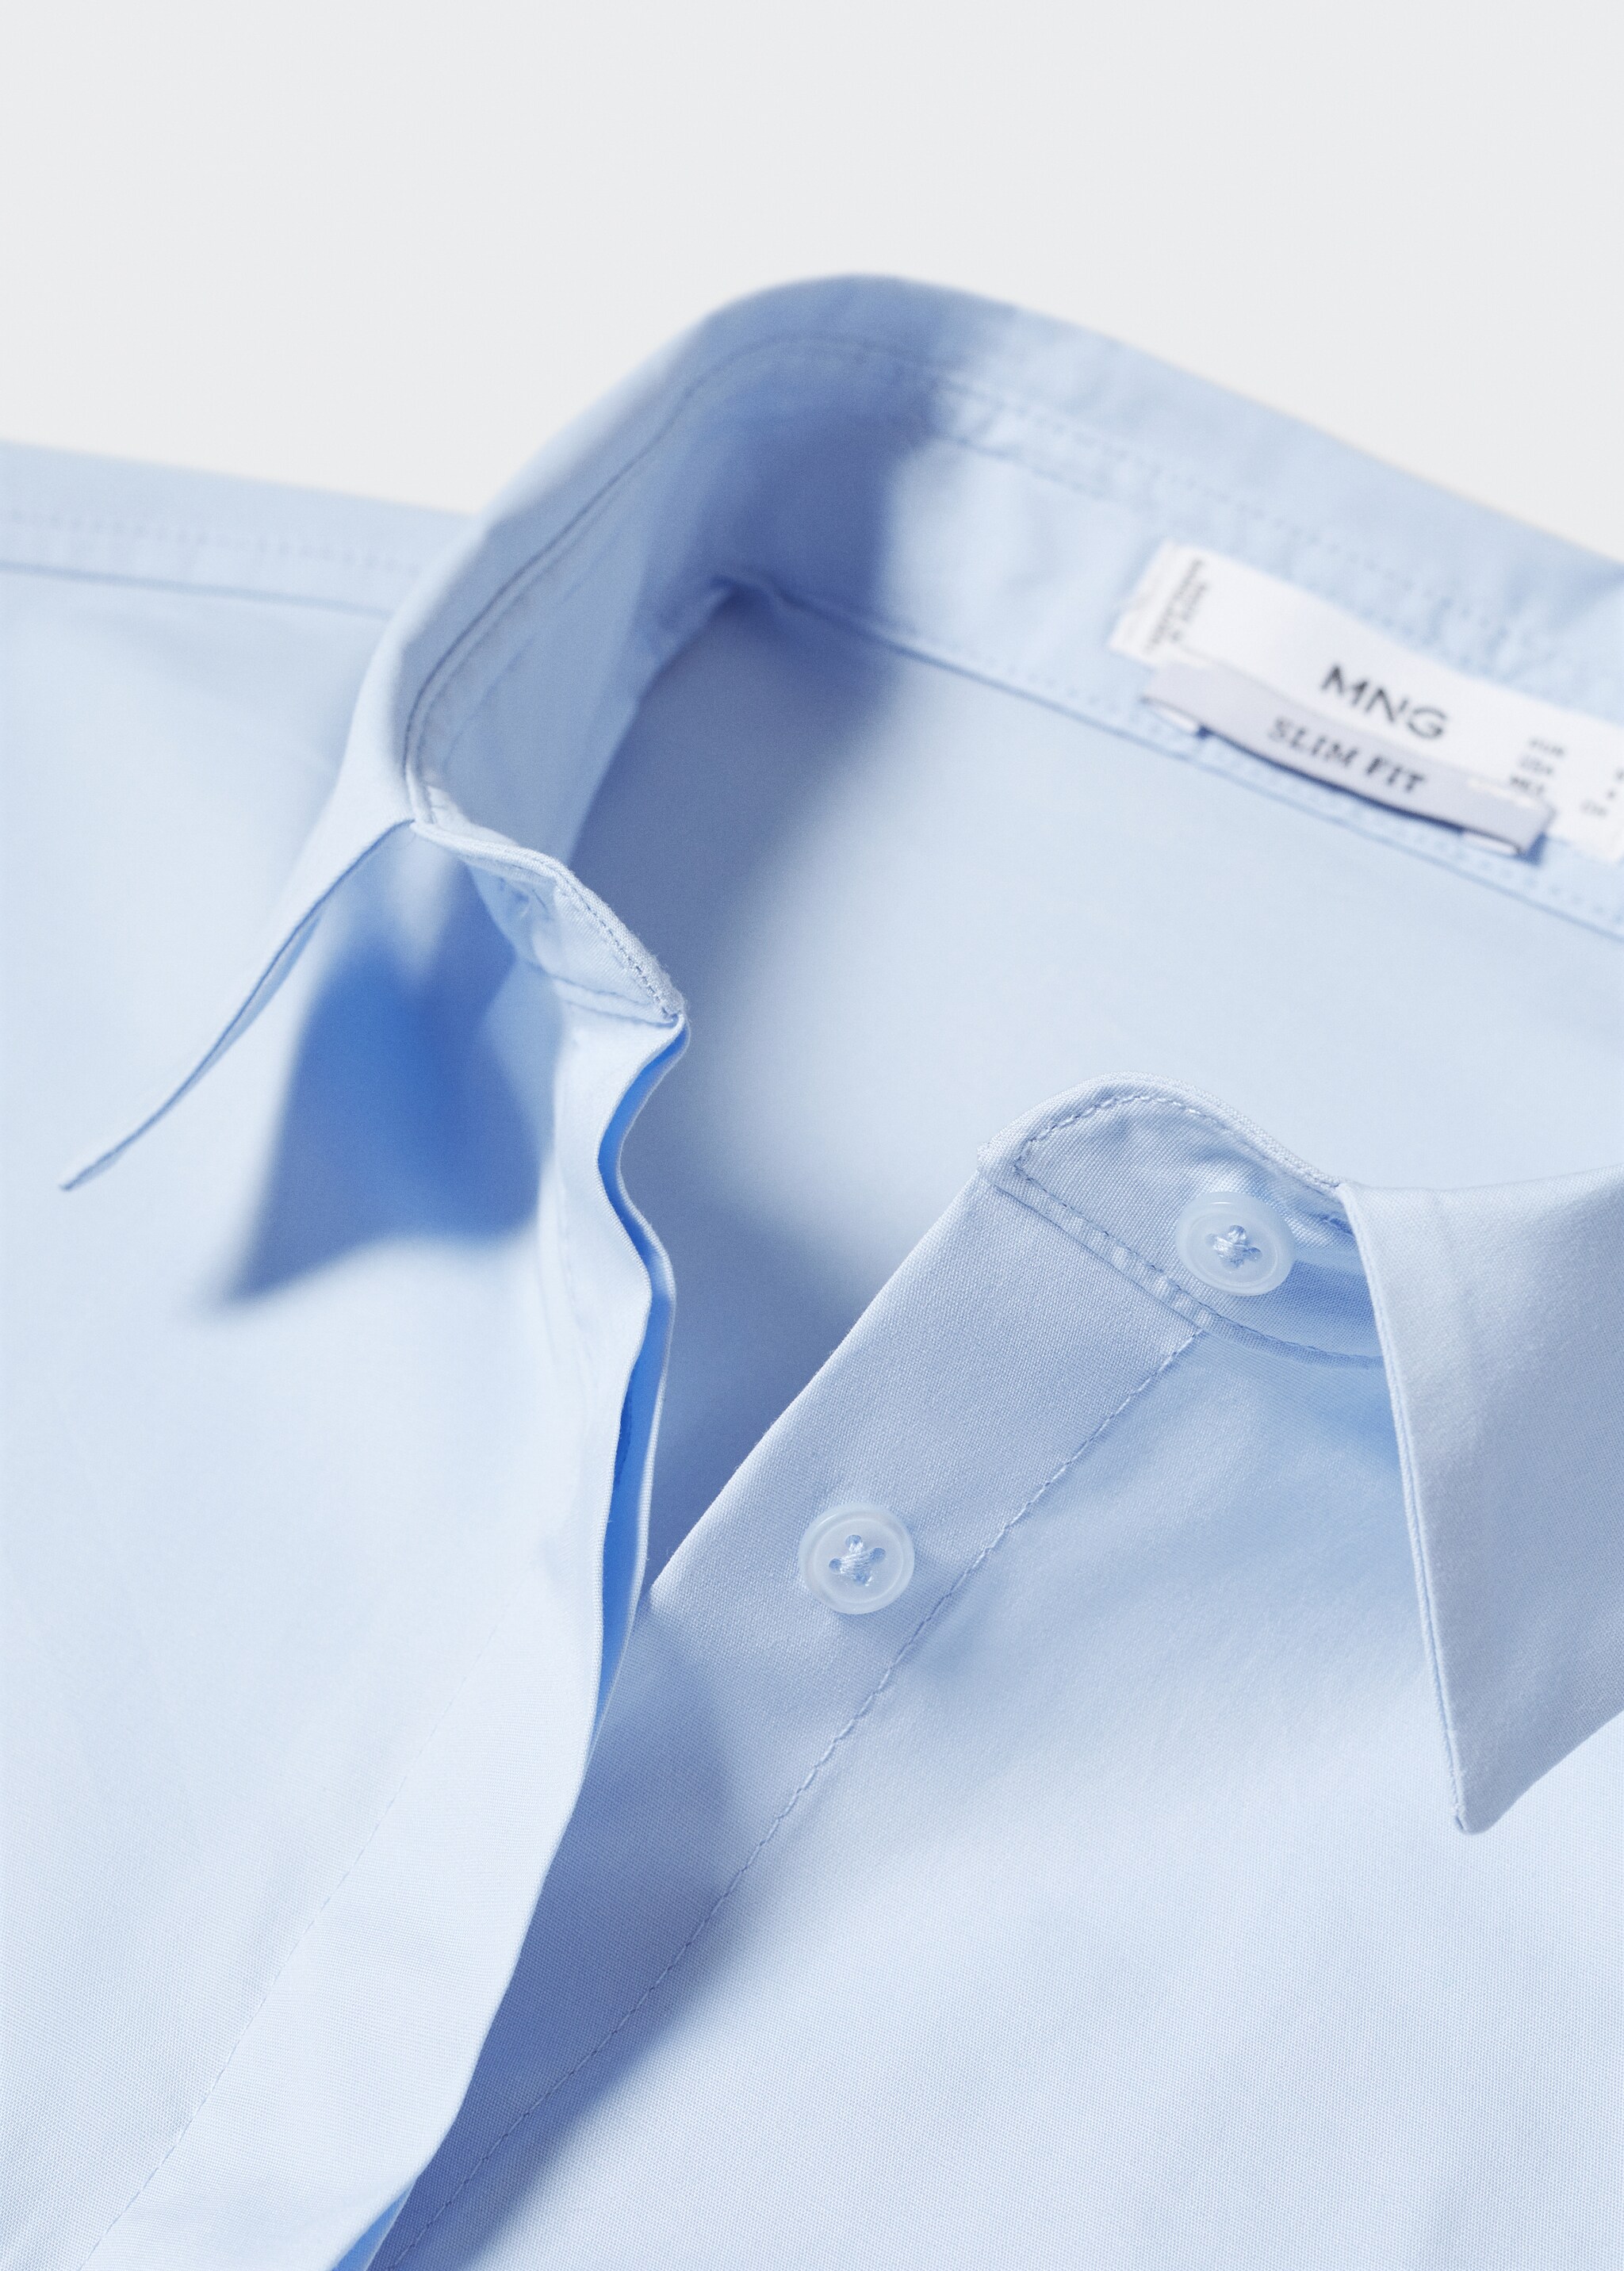 Camisa entallada algodón - Detalle del artículo 8